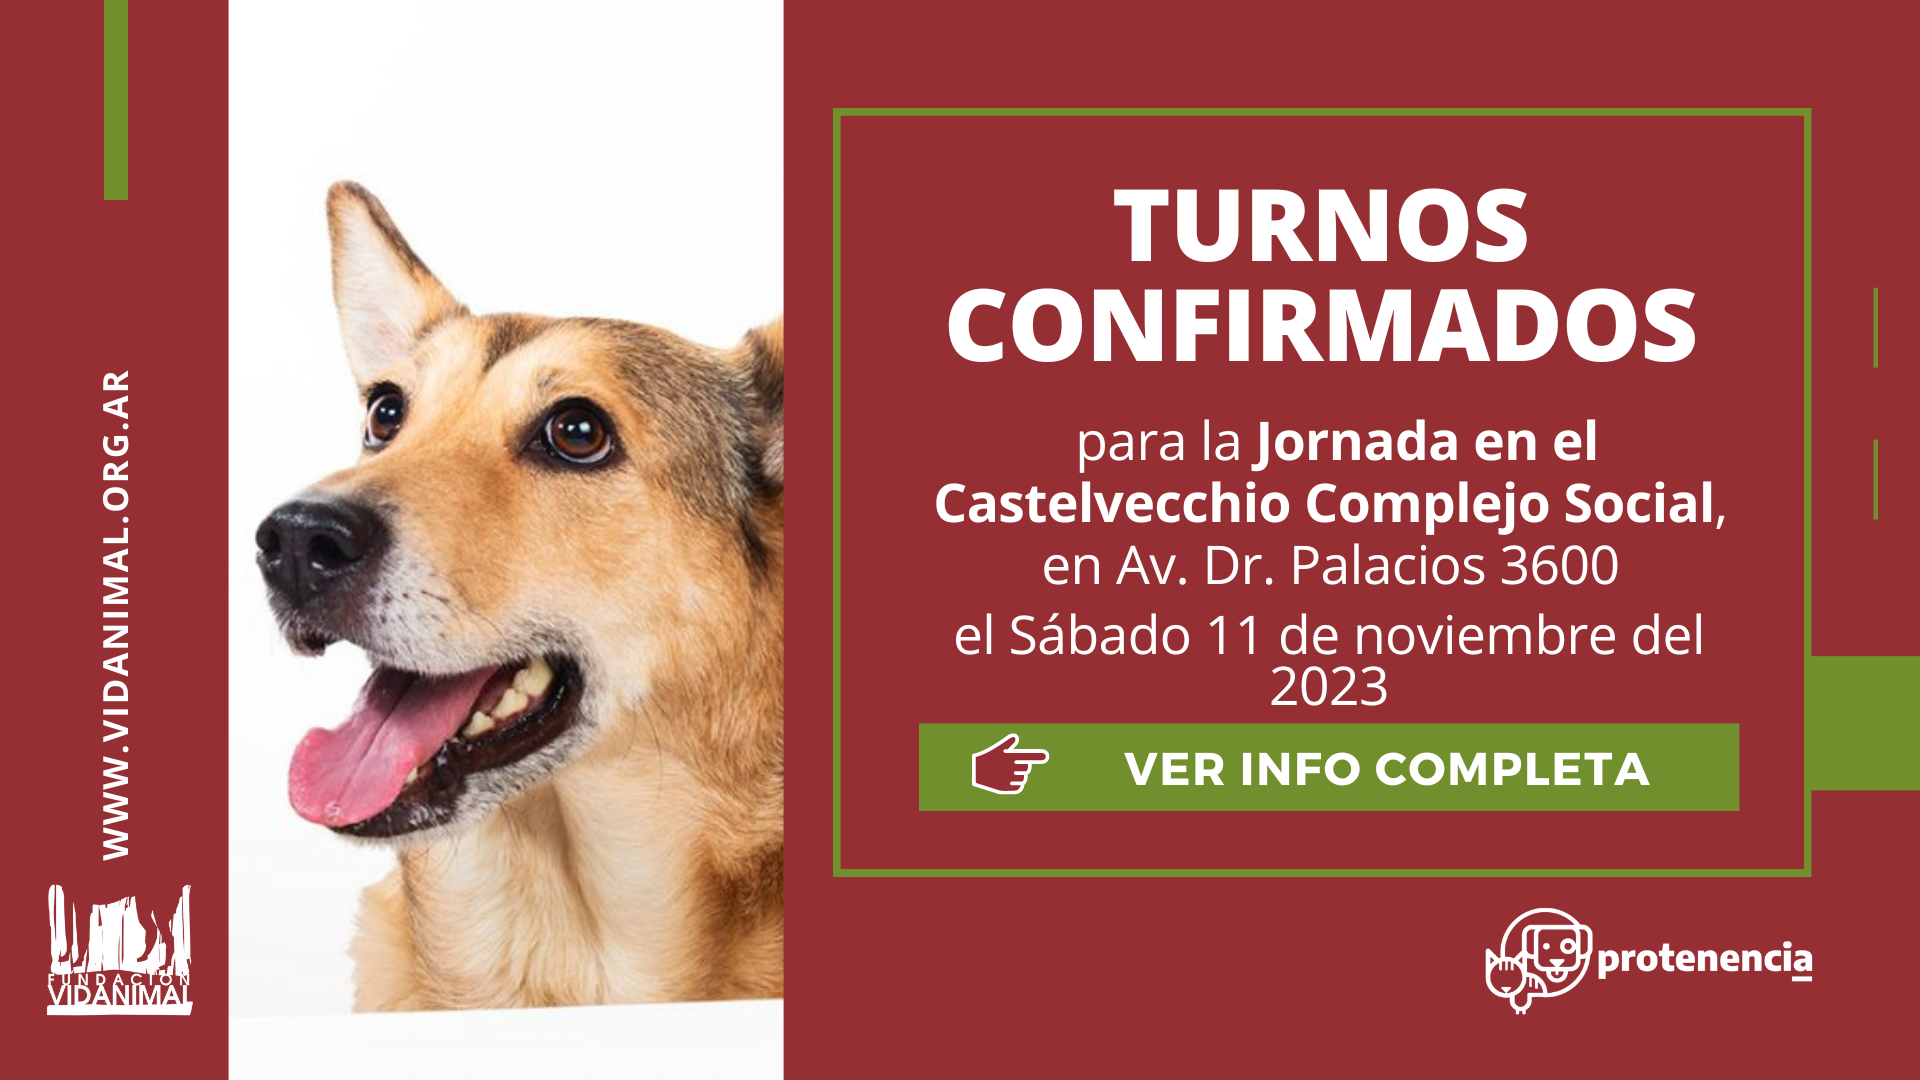 Lista de turnos confirmados: Jornada en el Castelvecchio Complejo Social – Sábado 11 de noviembre del 2023